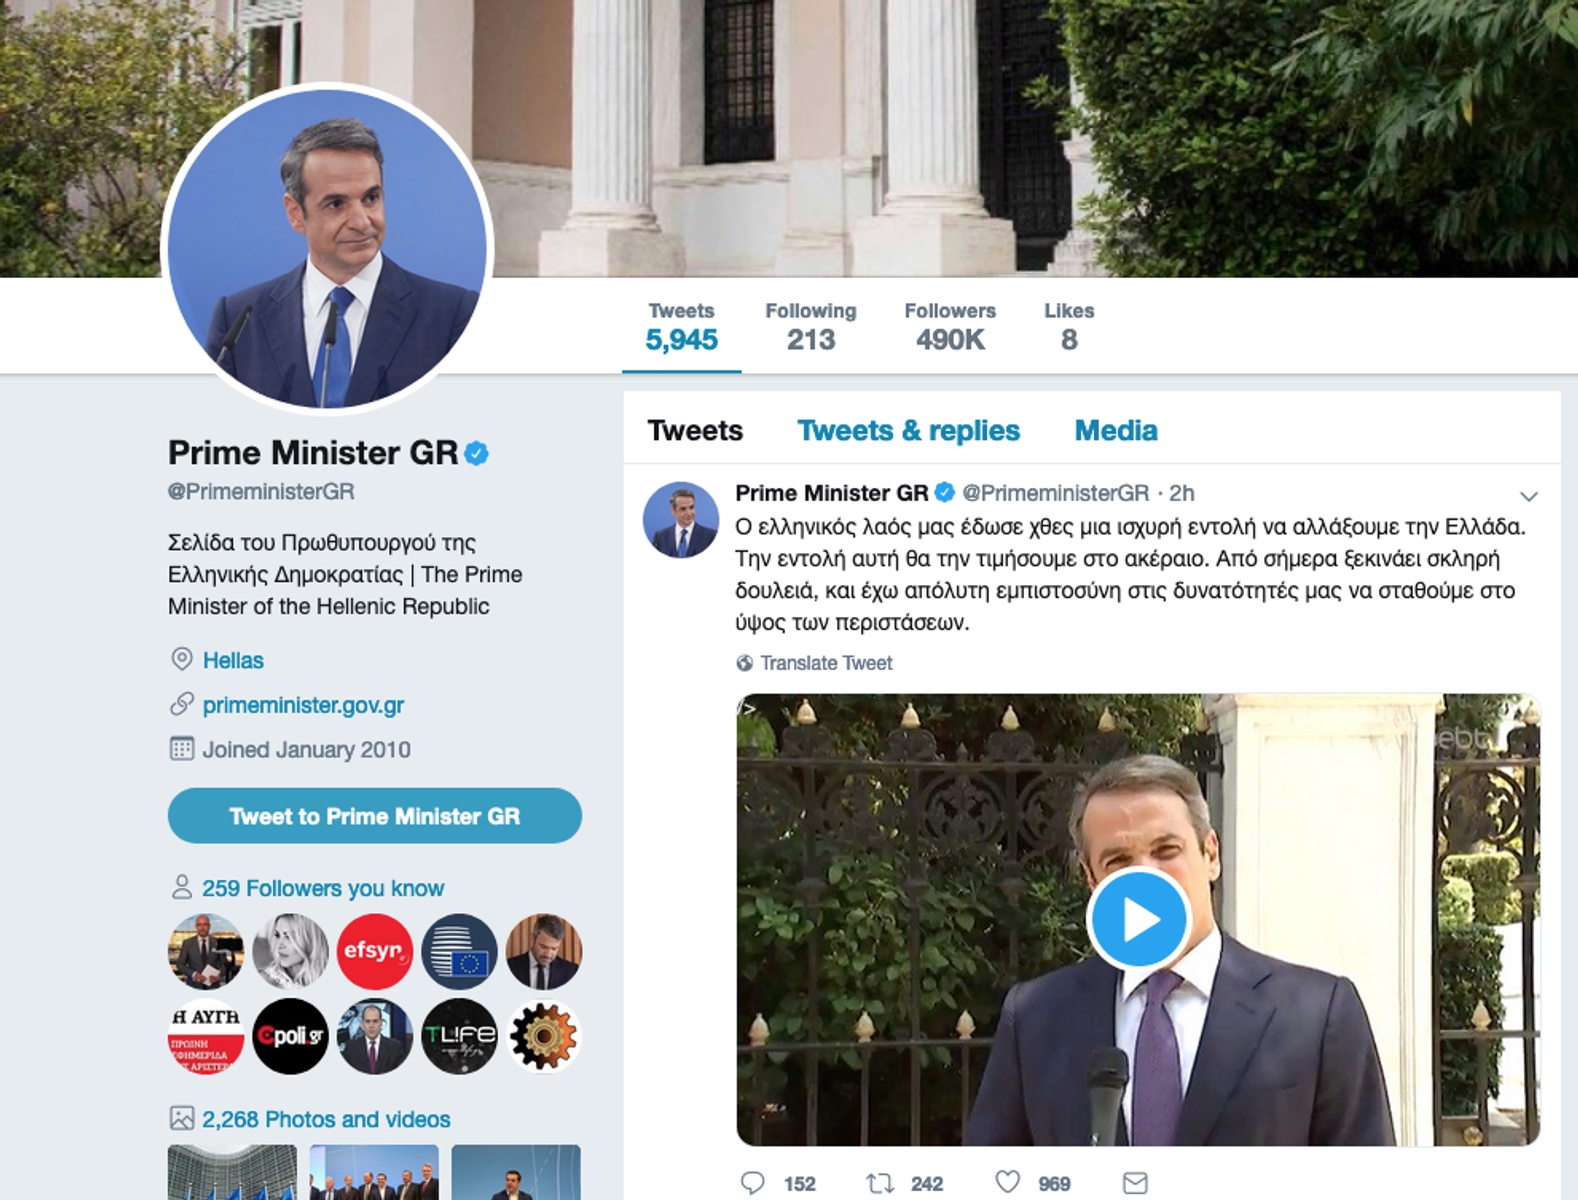 Κουλουβάχατα το twitter του πρωθυπουργού – Άλλαξε μόνο η φωτογραφία!